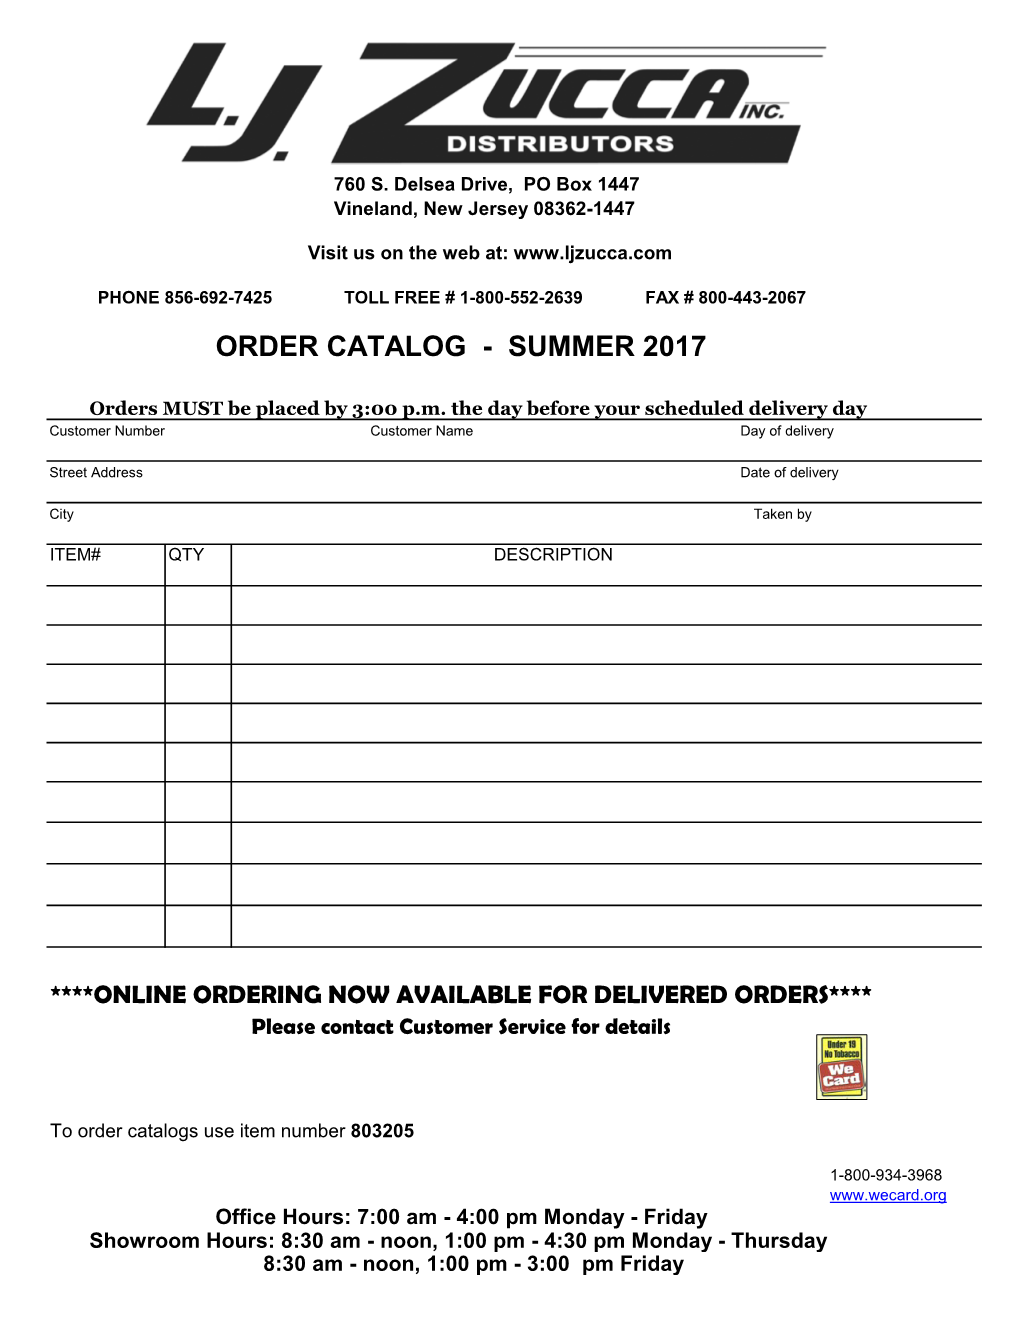 Order Catalog - Summer 2017